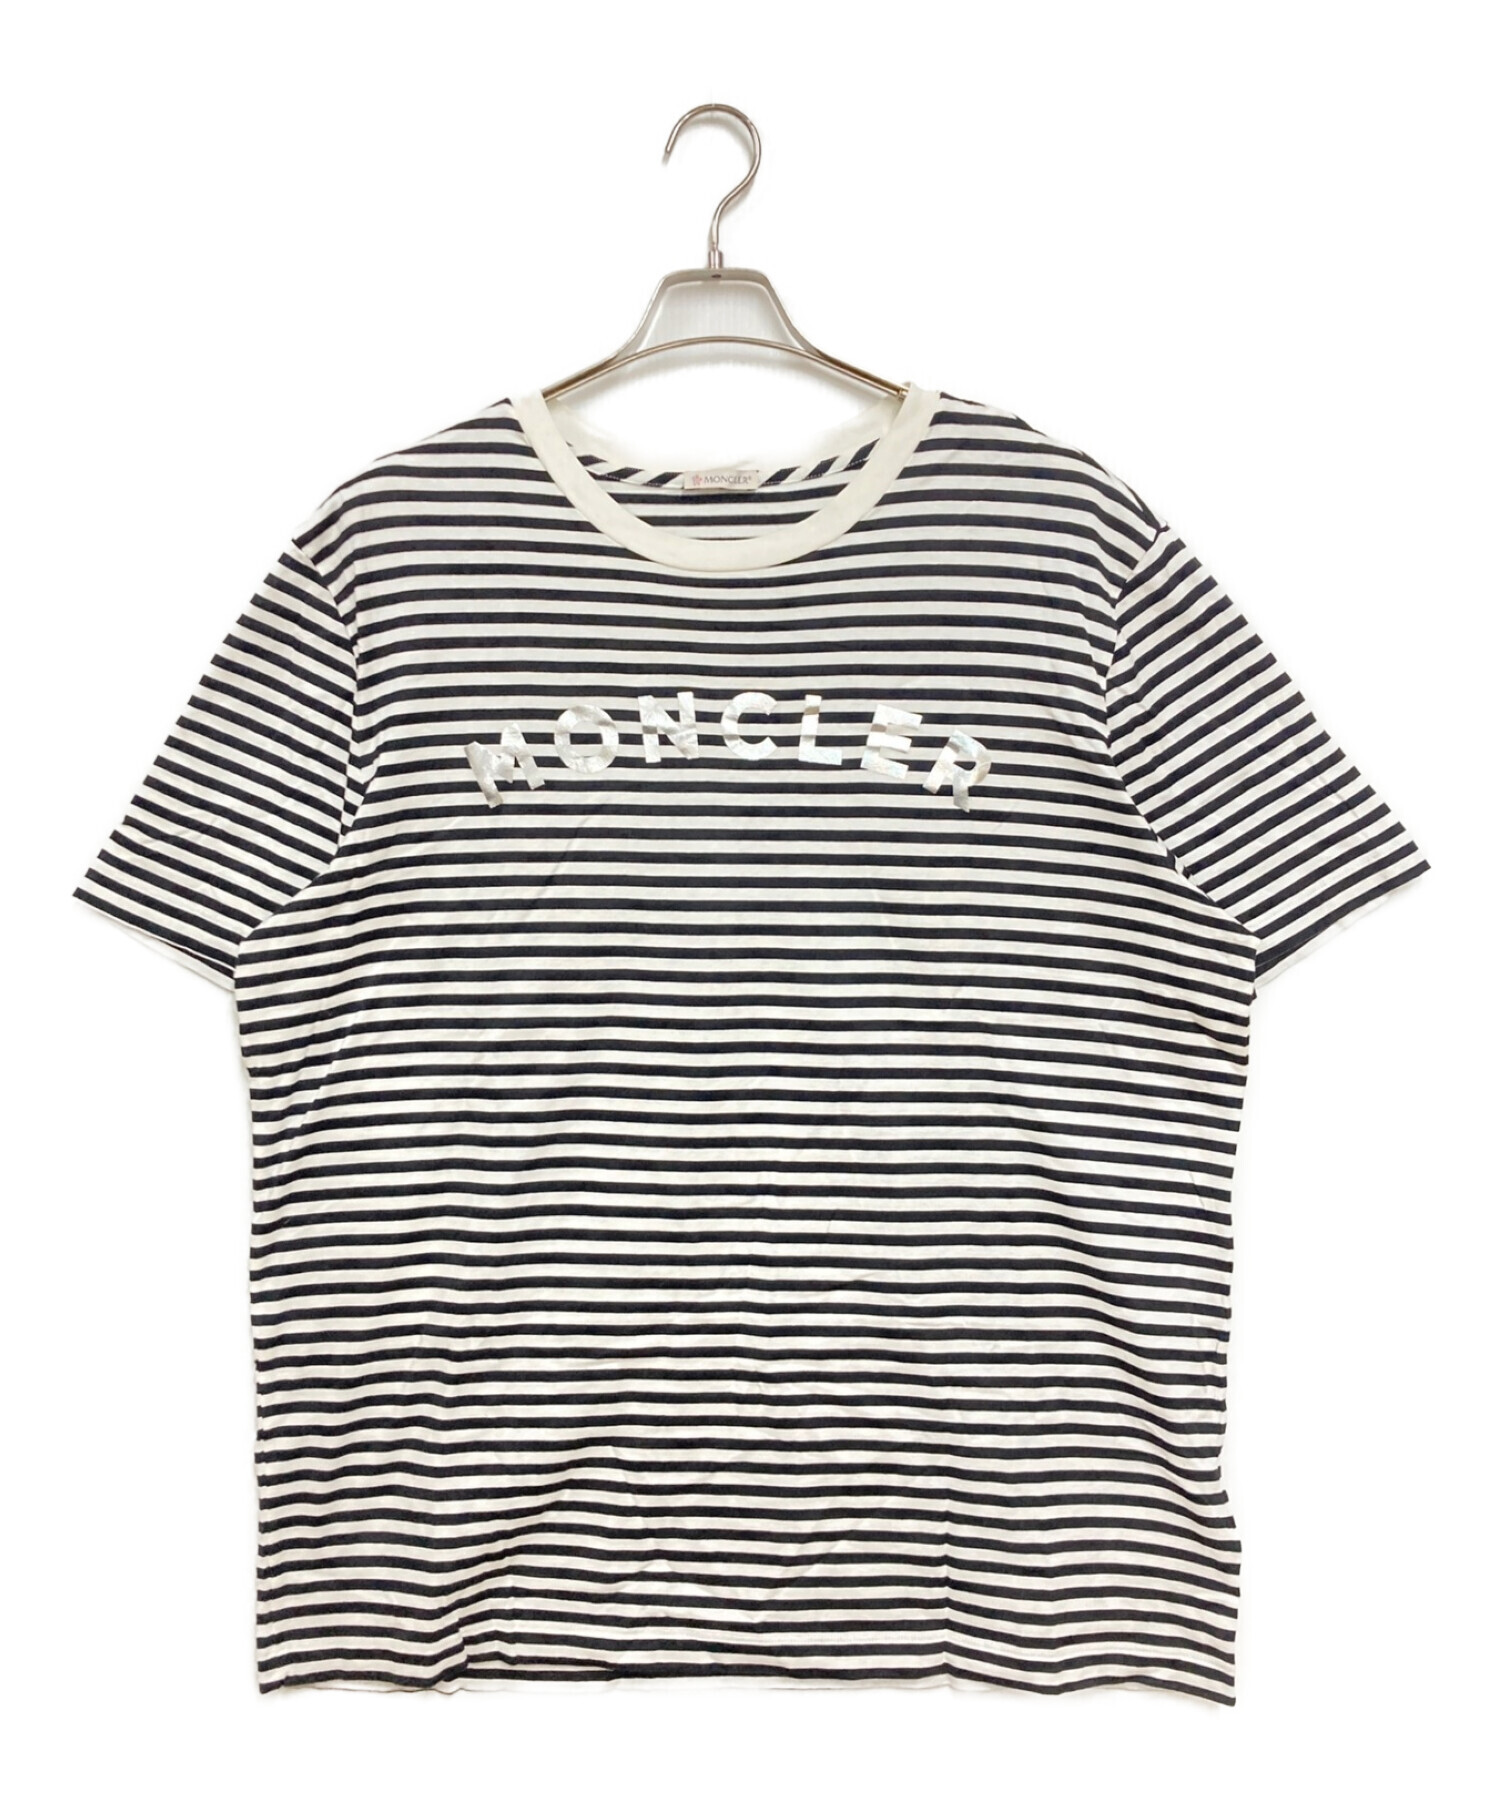 MONCLER (モンクレール) ボーダーTシャツ ホワイト×ブラック サイズ:XL